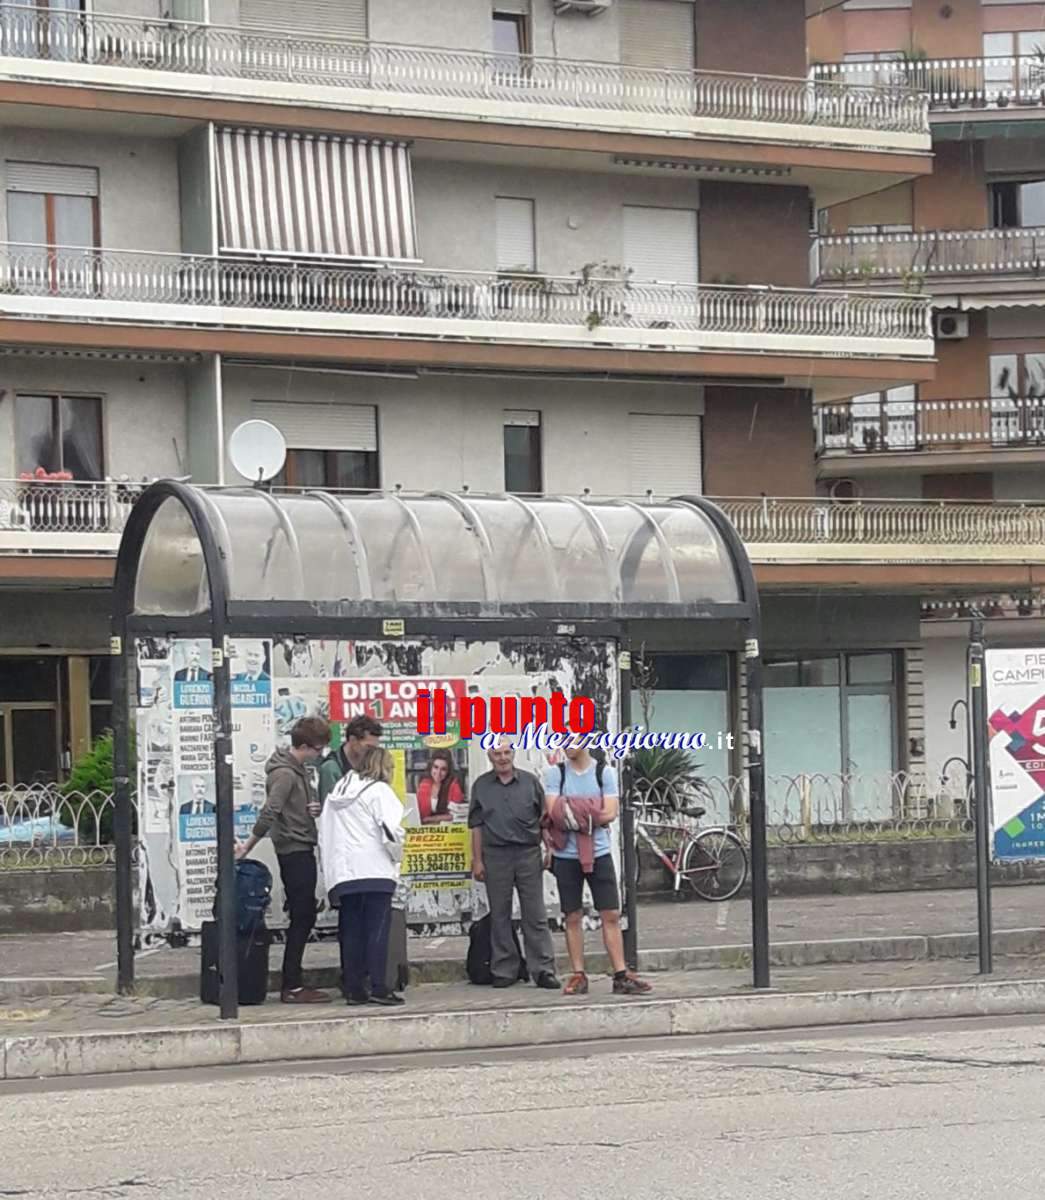 Turisti a Cassino costretti a chiedere informazioni agli stranieri